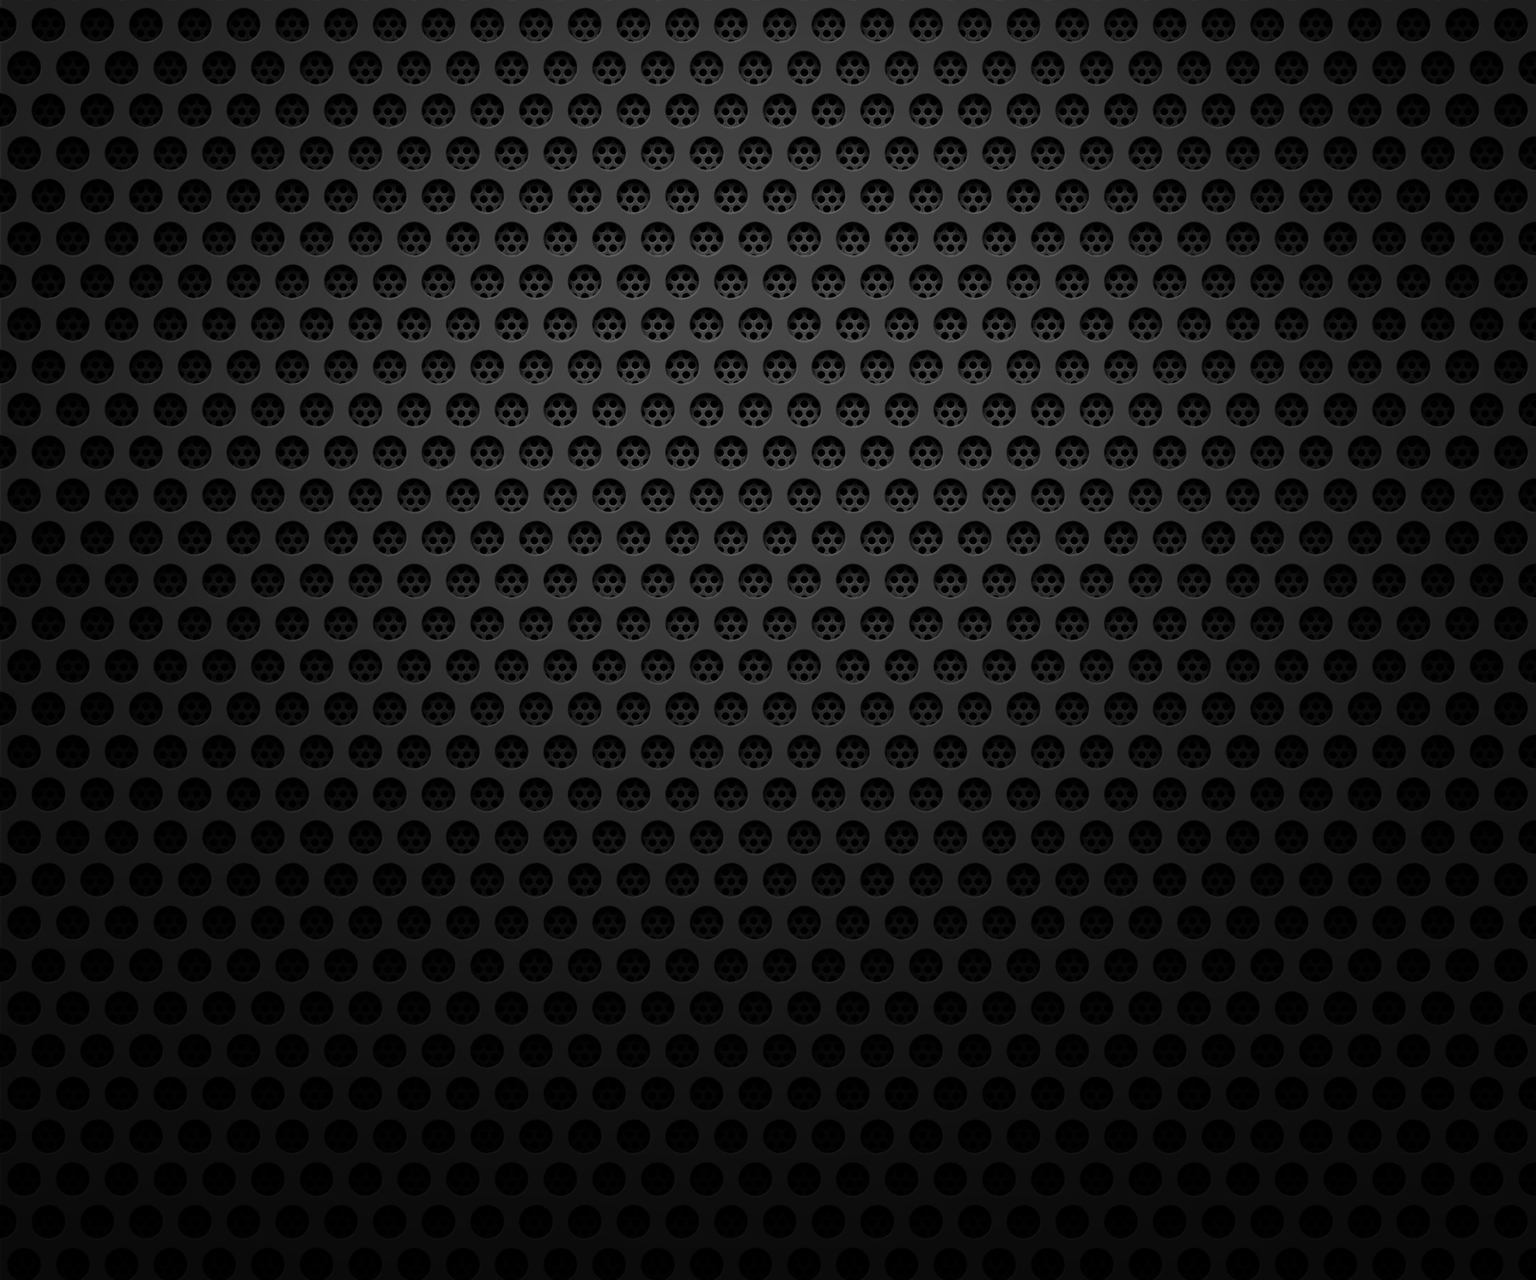 Blackberry Wallpaper